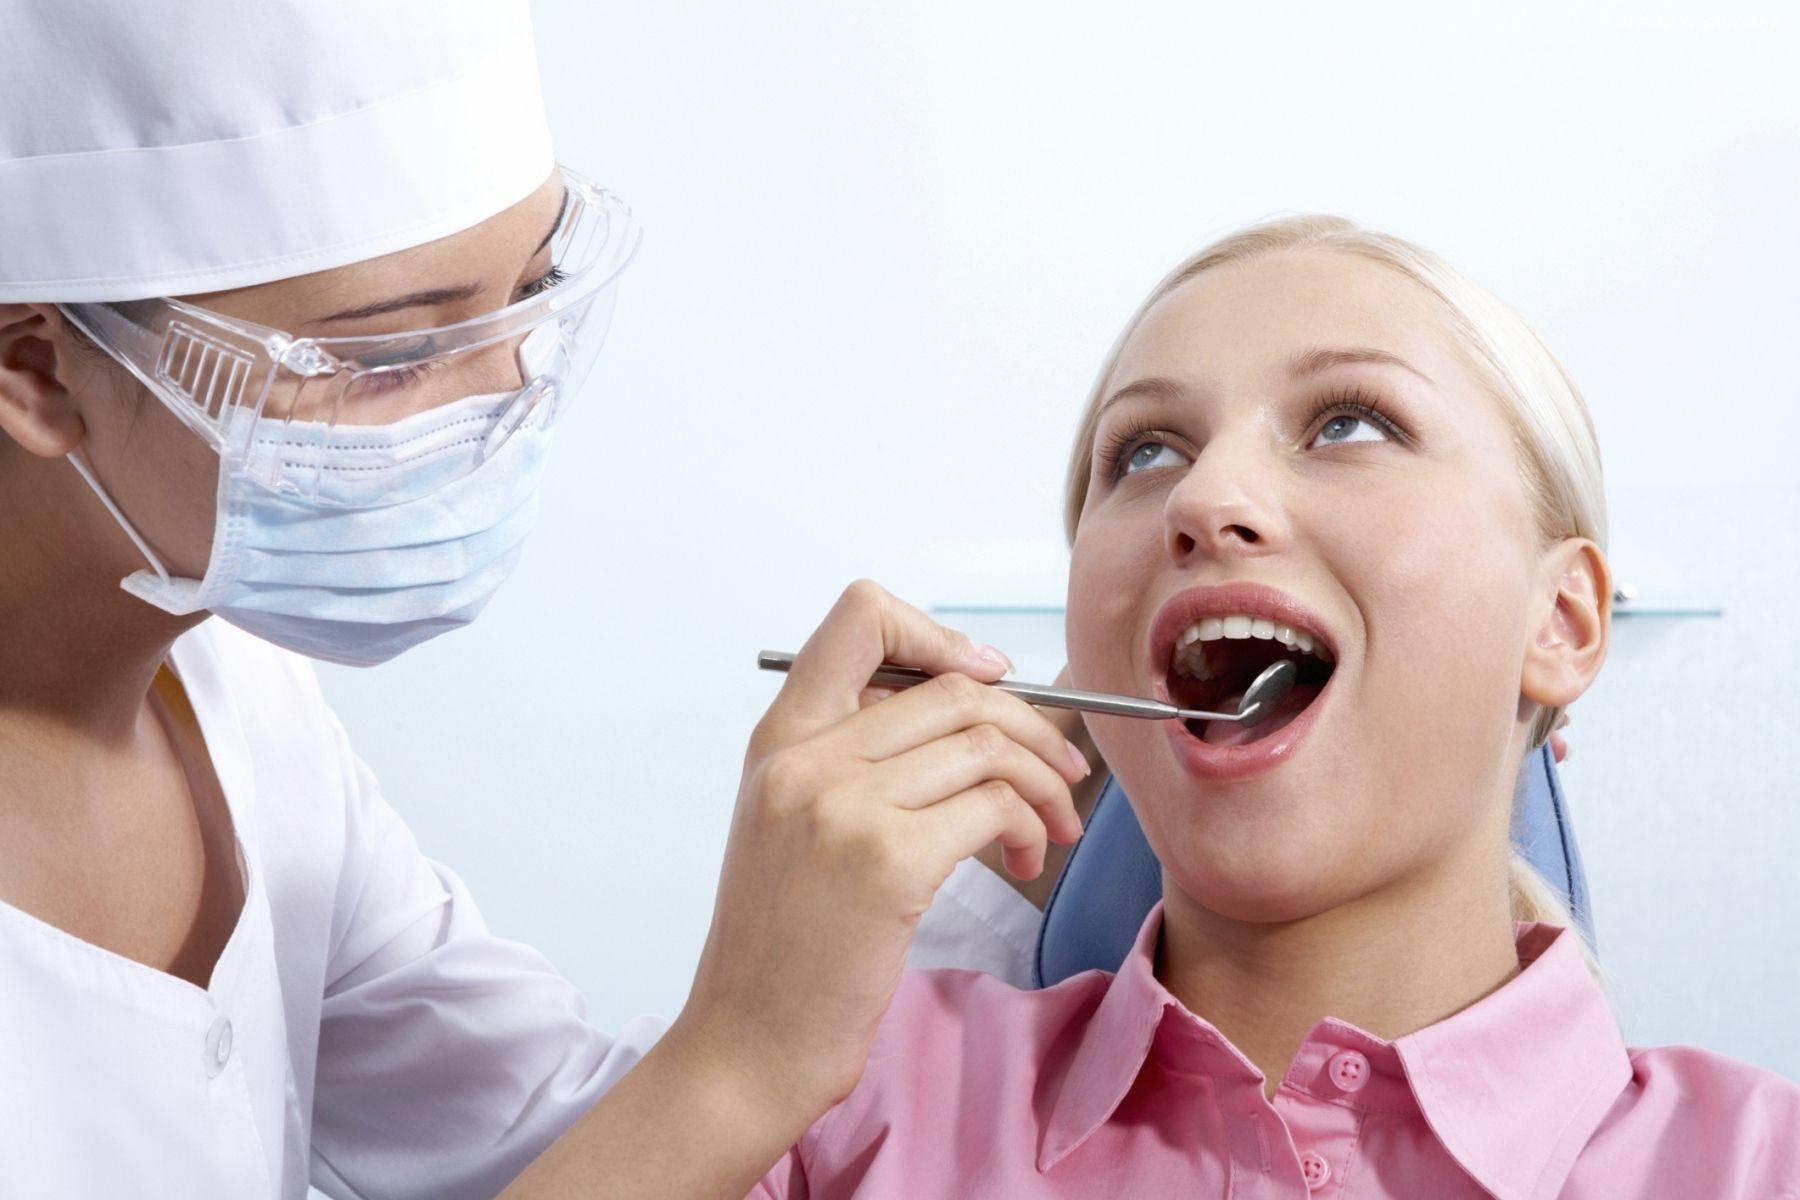 Tandlæge bruger spejlstang på patientens tænder Wallpaper